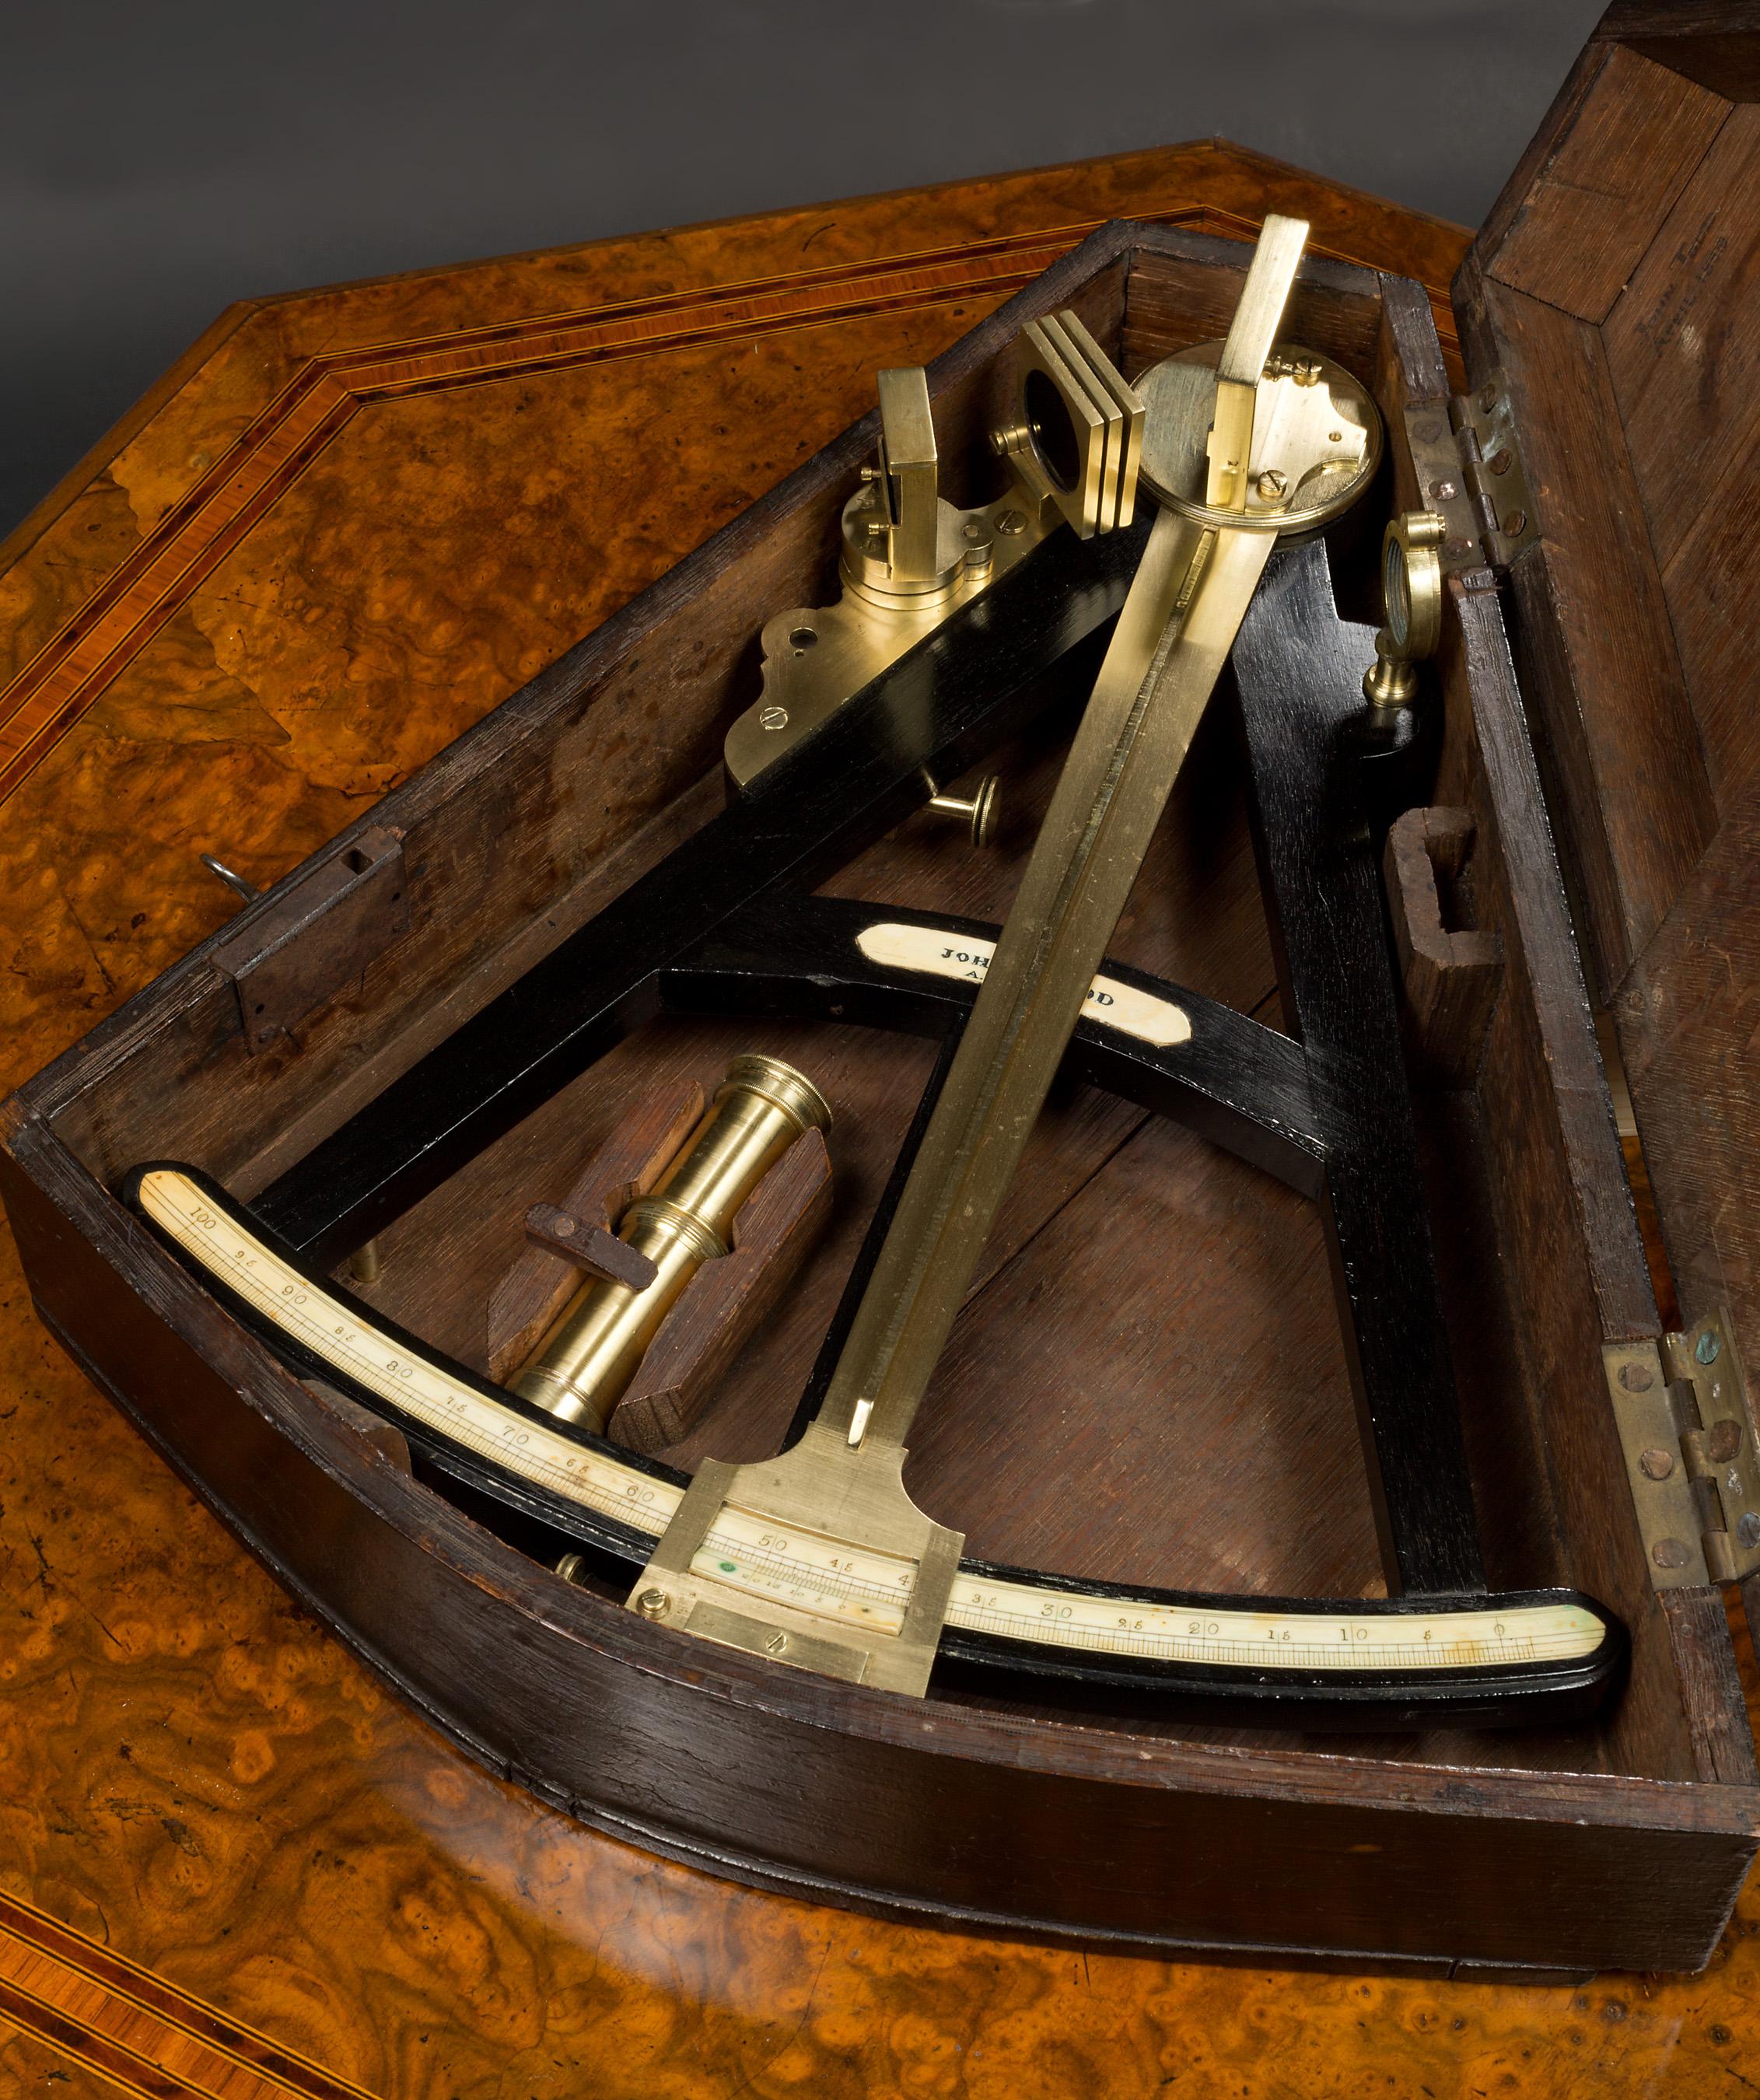 Nonius-Oktant von John Todd, London, um 1850. 

Ein Elf-Zoll-Radius Nonius Oktant von John Todd mit ebonisierten hölzernen Rahmen mit eingefügten Knochen Skala von 0 bis 100 Grad mit eingefügten Hersteller Knochen Plaque markiert. 

Indexarm aus